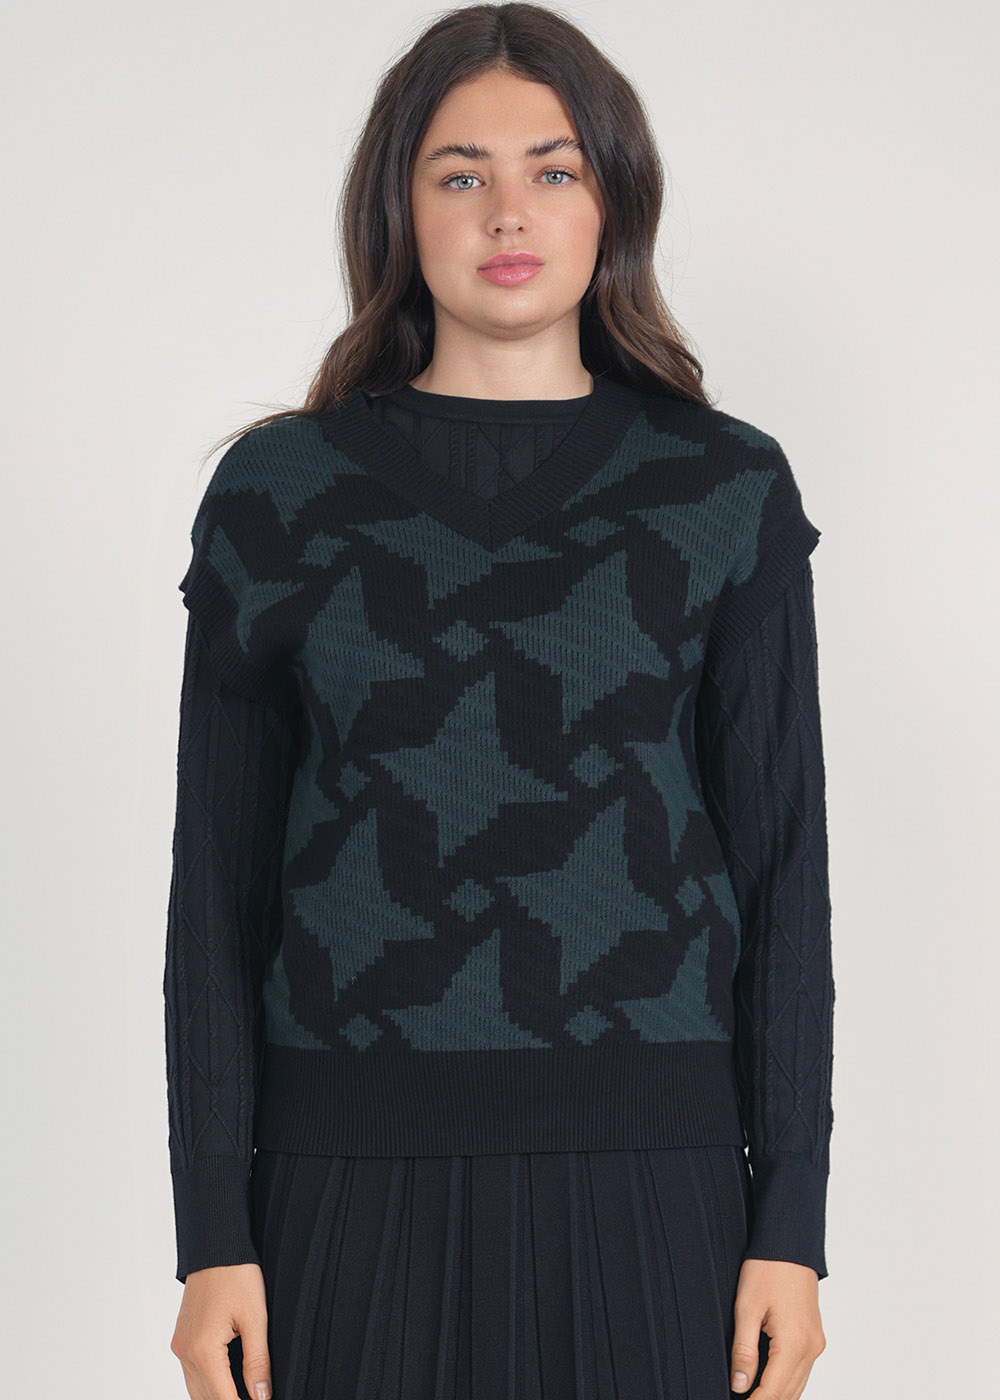 Knitted Harmony: Green & Black V-Neck Waistcoat